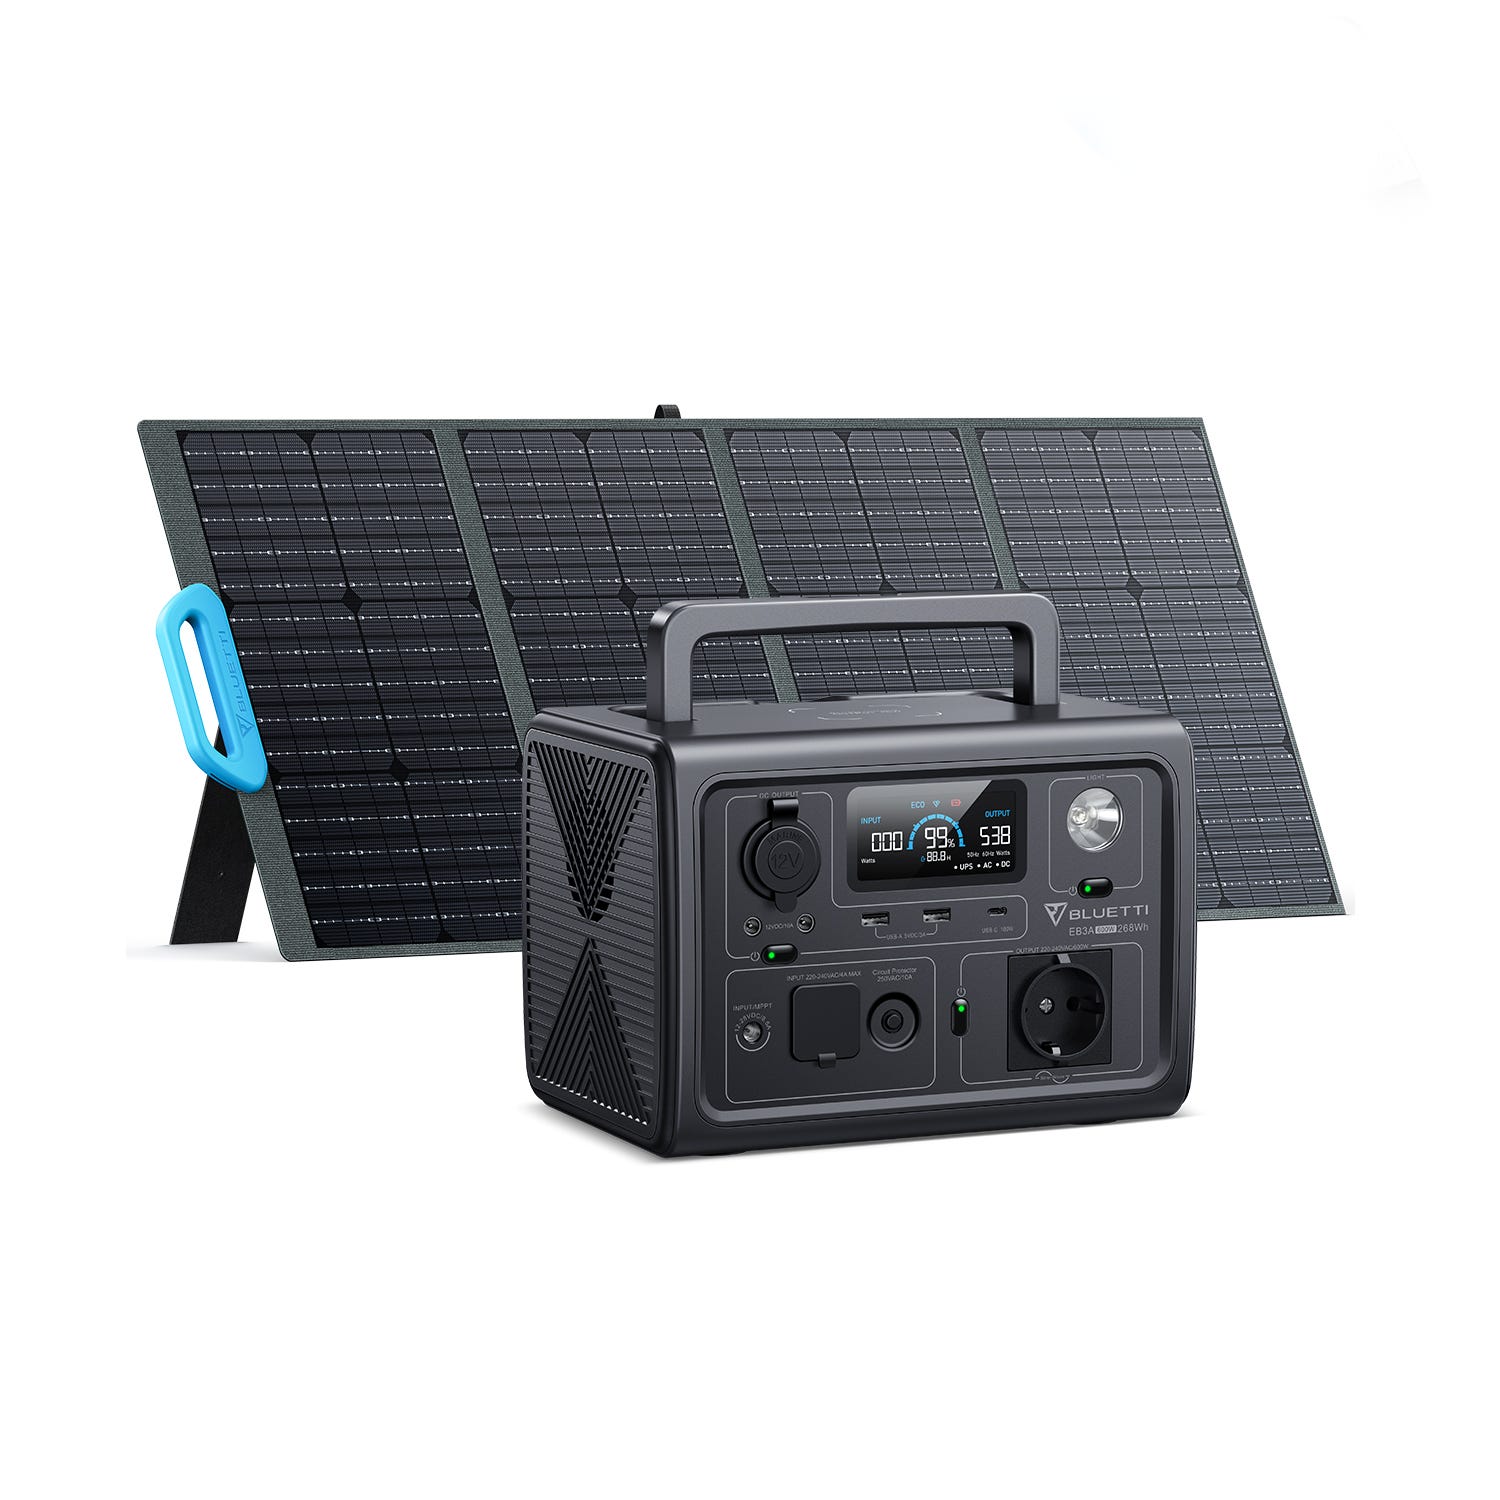 Generador Solar portátil GS3 – CITELS